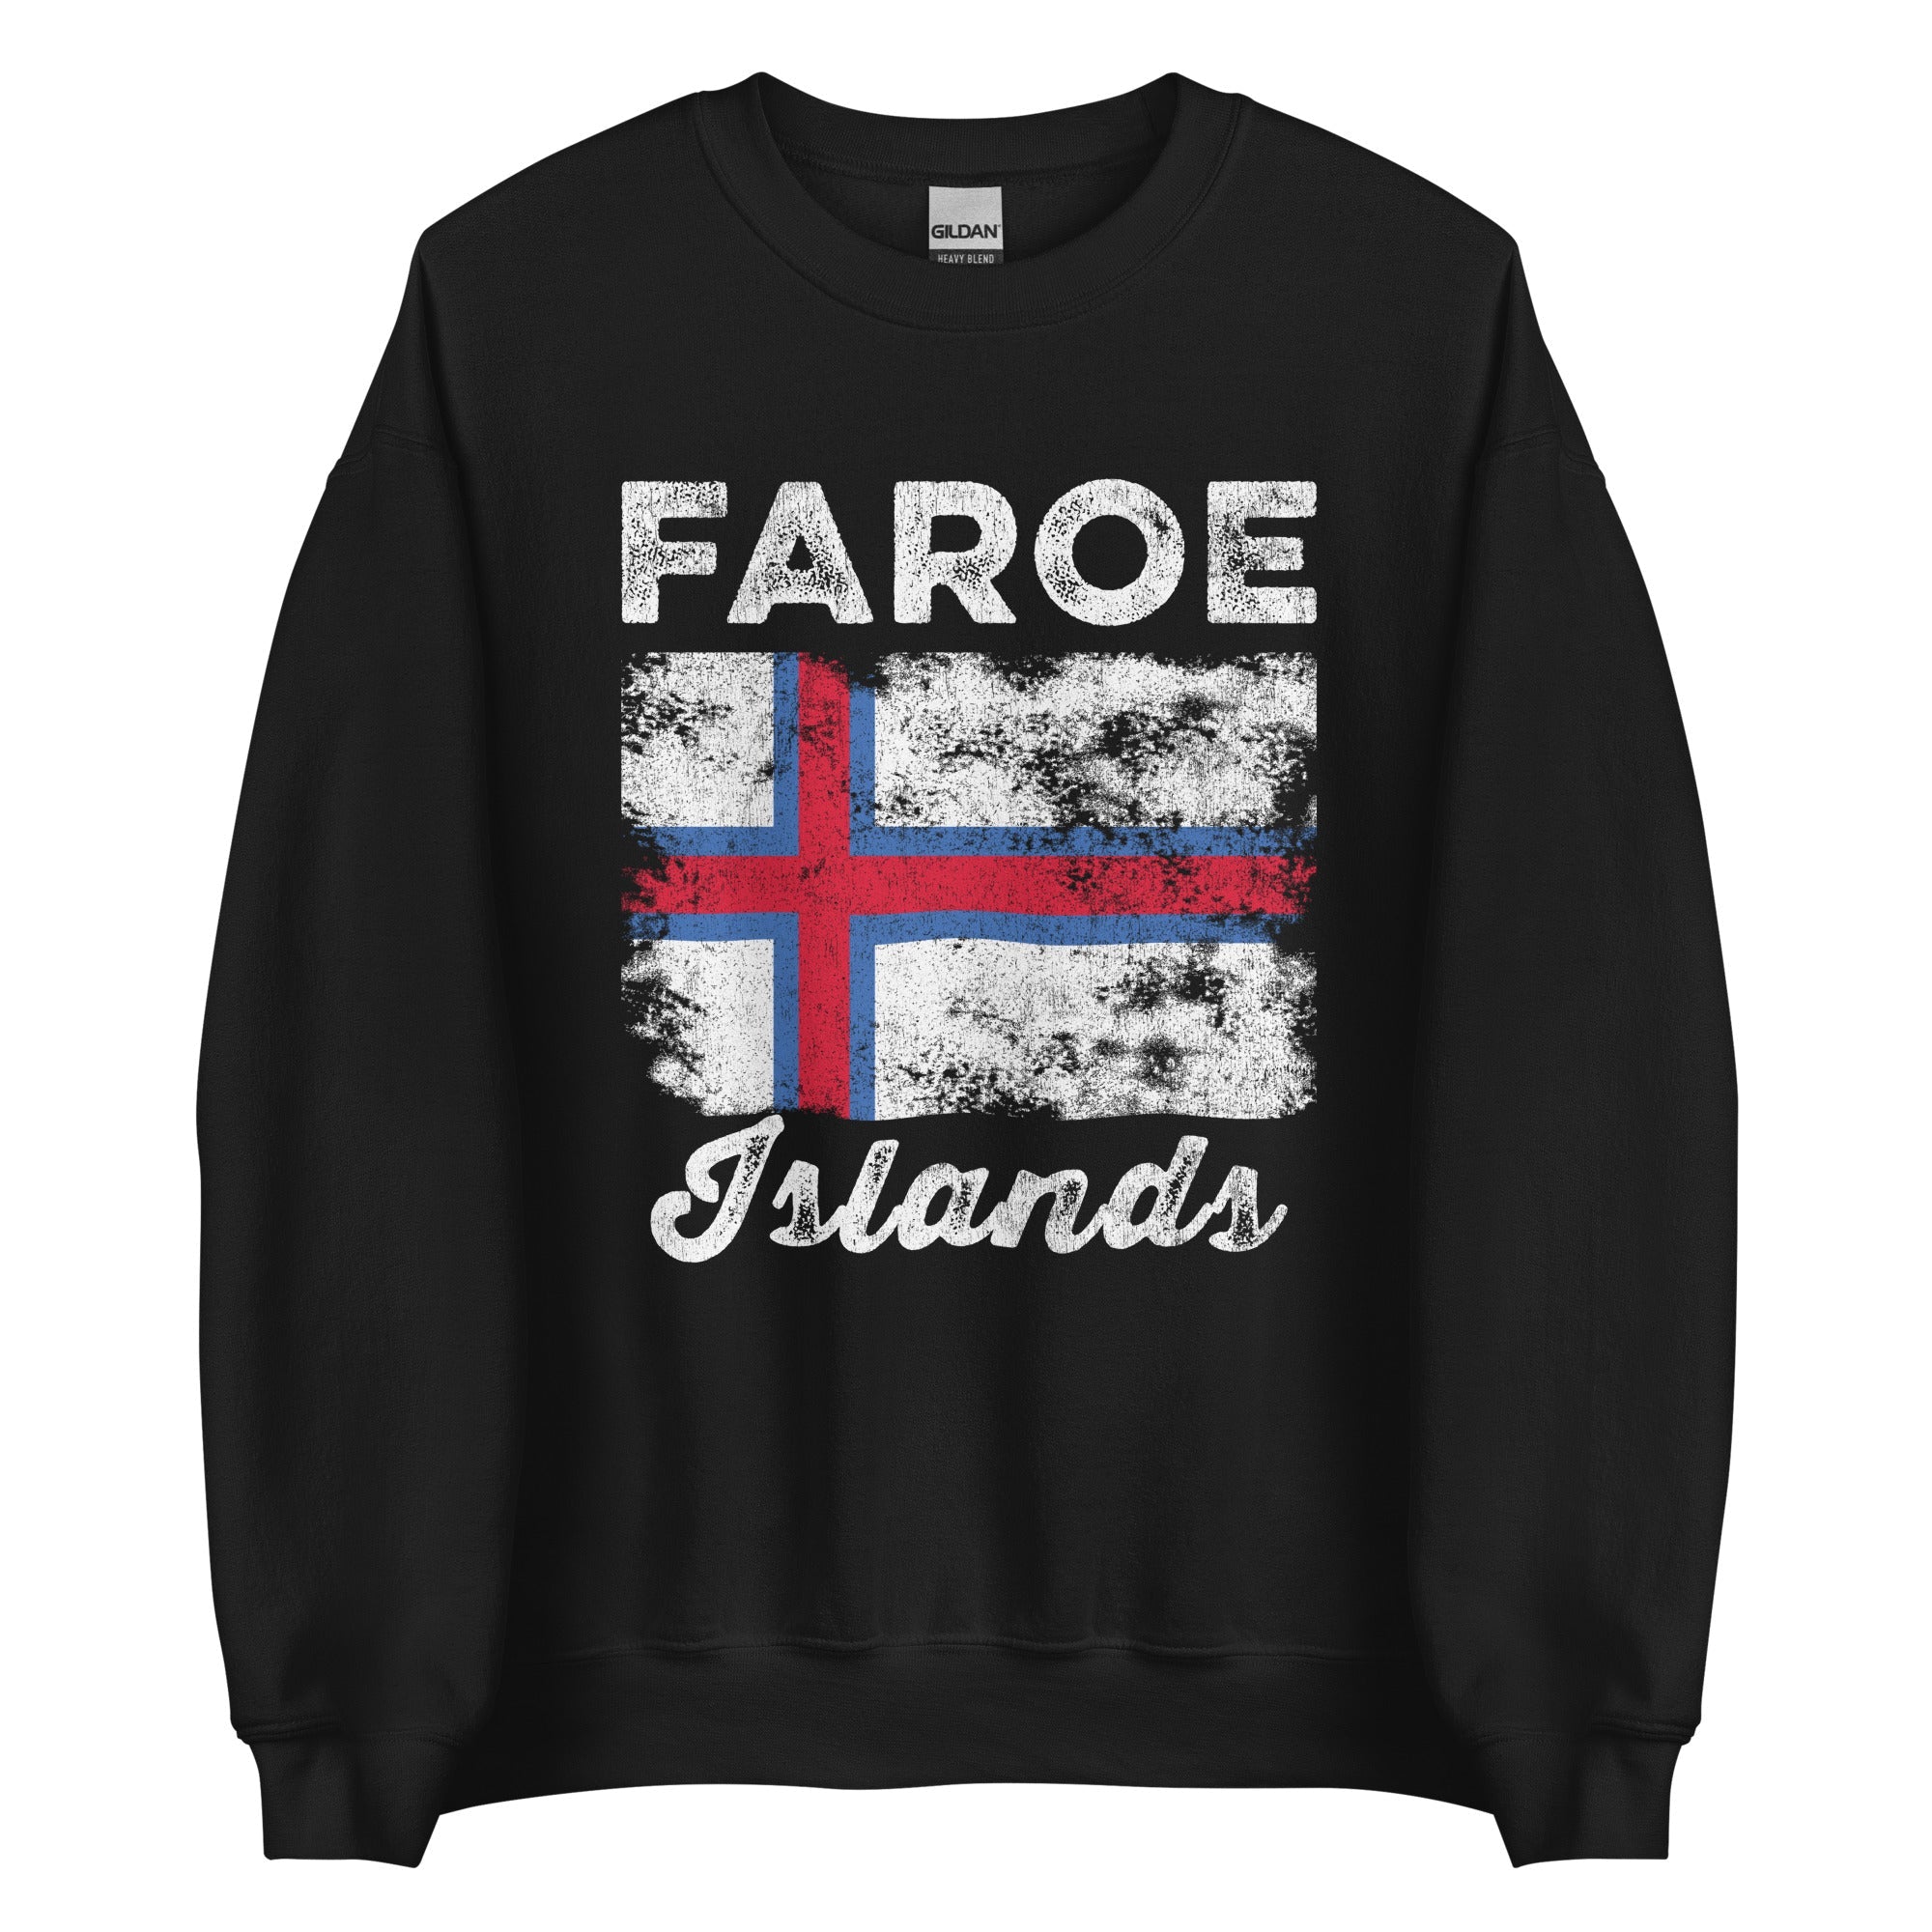 Faroe Islands Flag Vintage Faroese Flag Sweatshirt